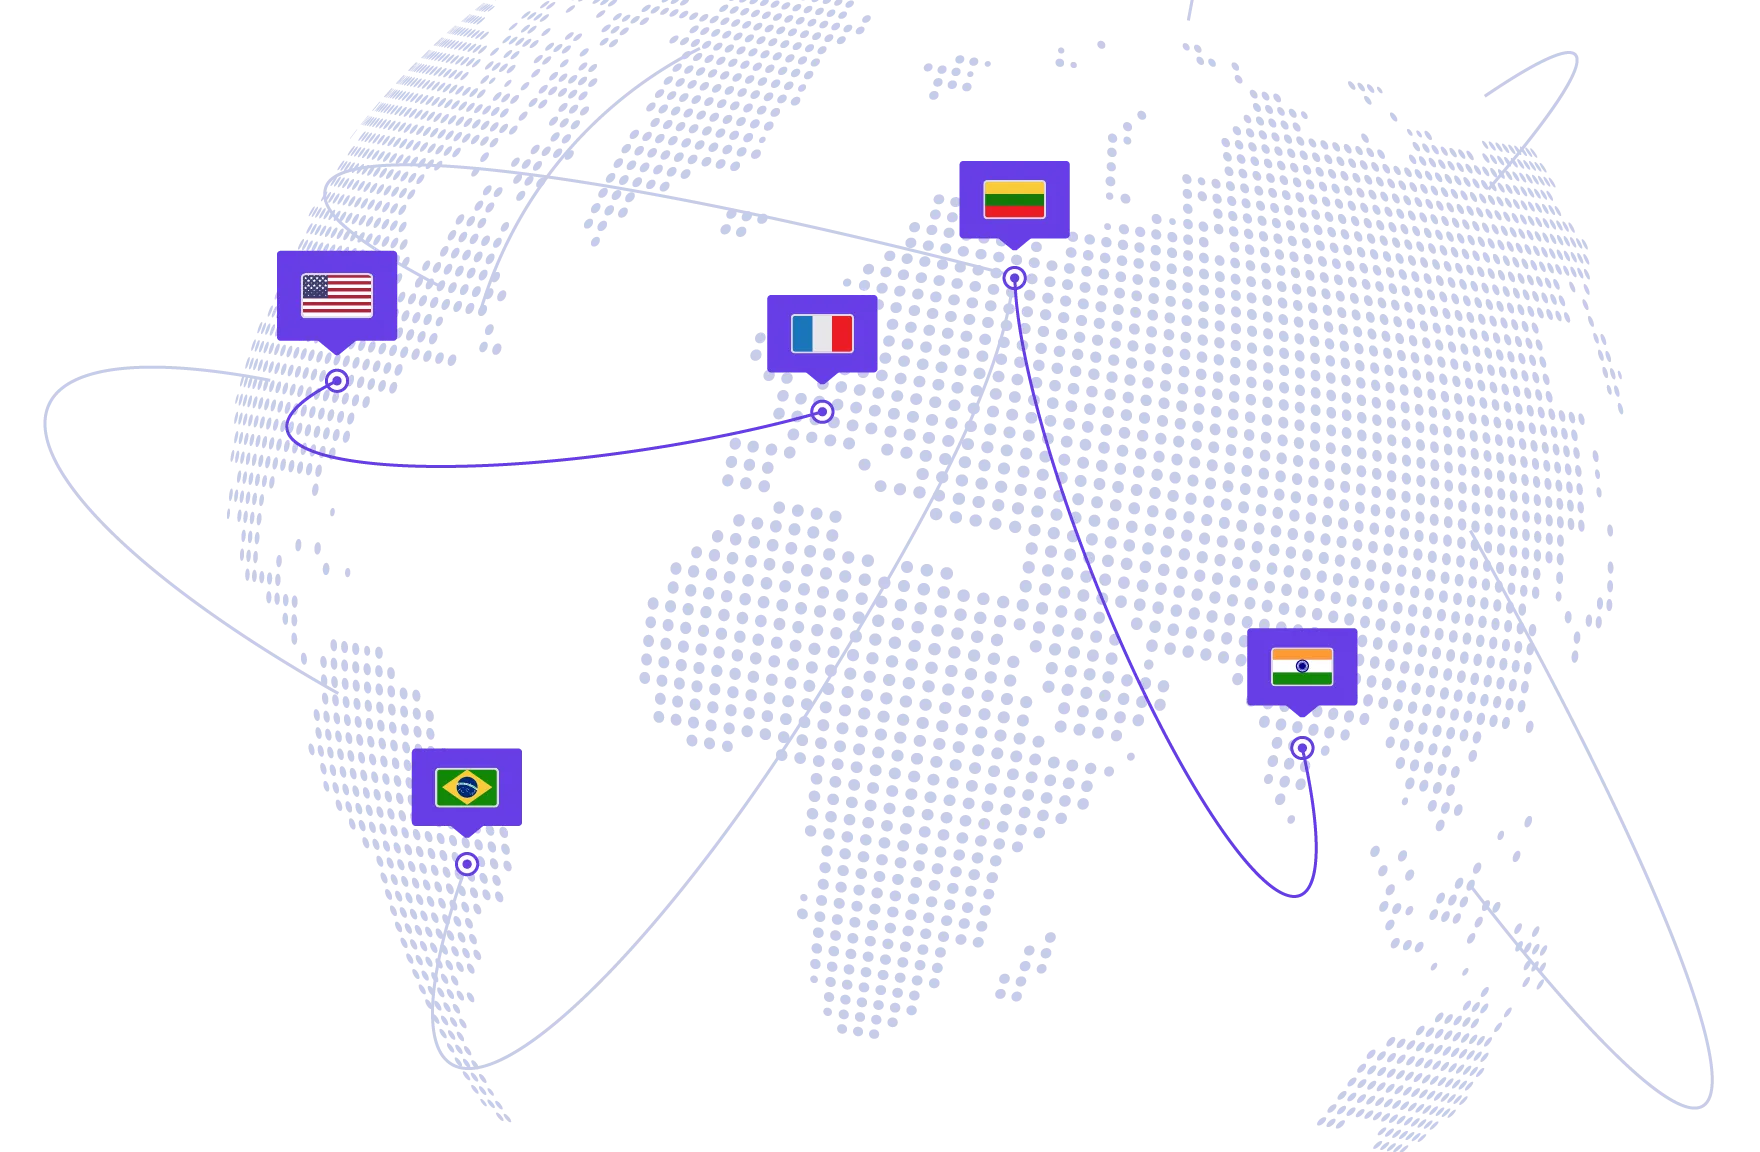 Centros de datos en todo el mundo